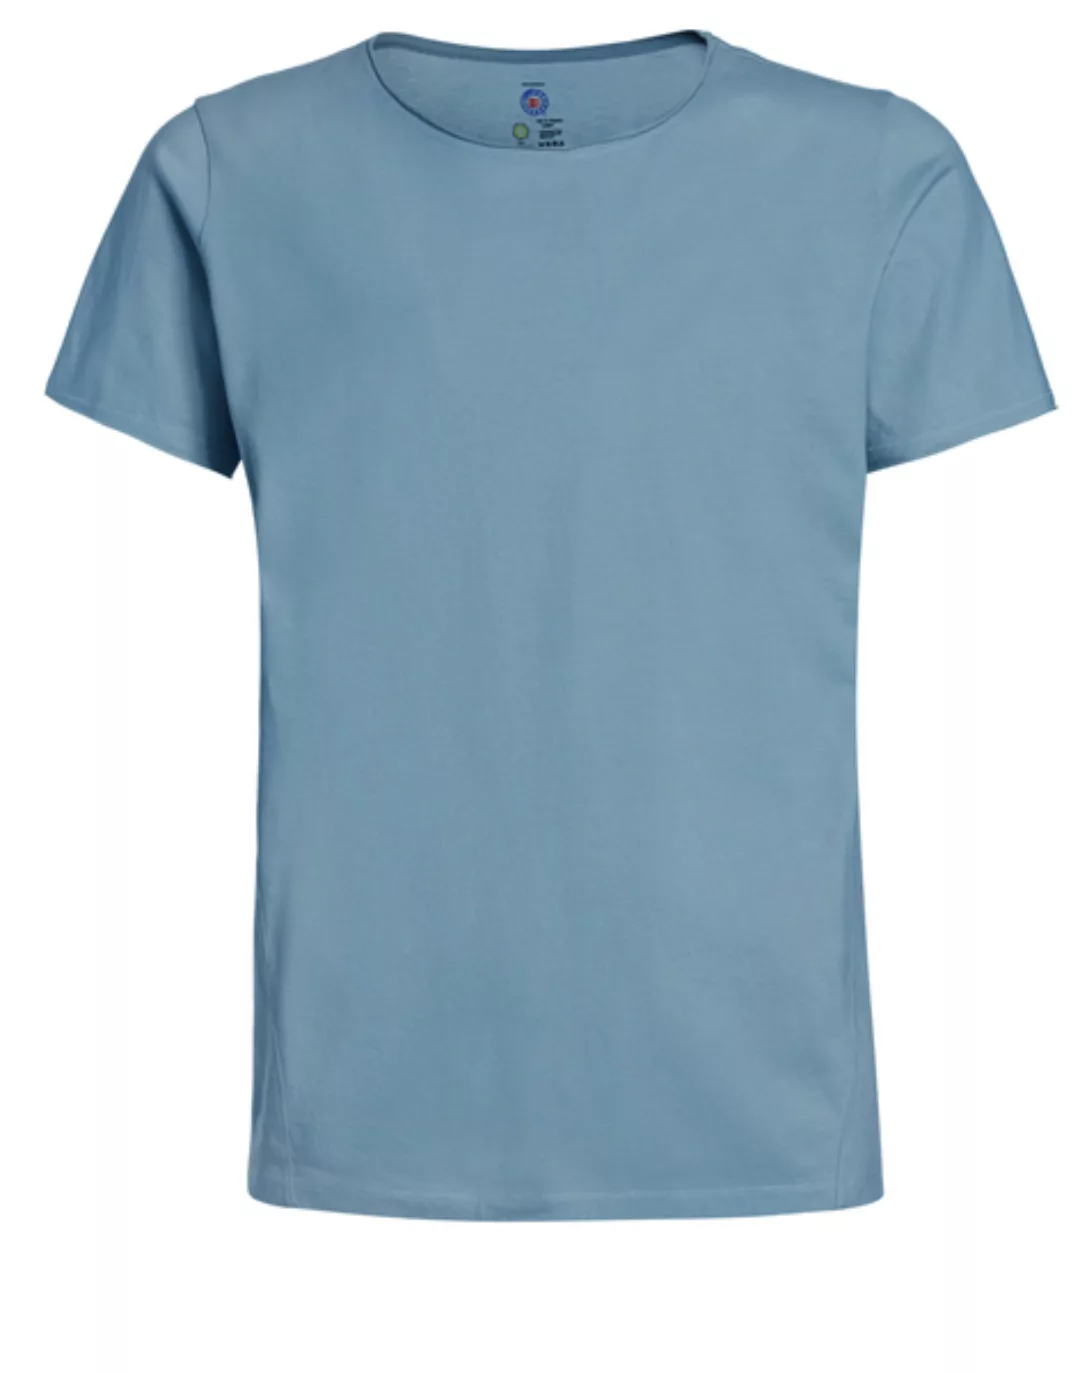 Herren T-shirt / Johnny / Bio-baumwolle / Rundhals-ausschnitt / Organic Cot günstig online kaufen